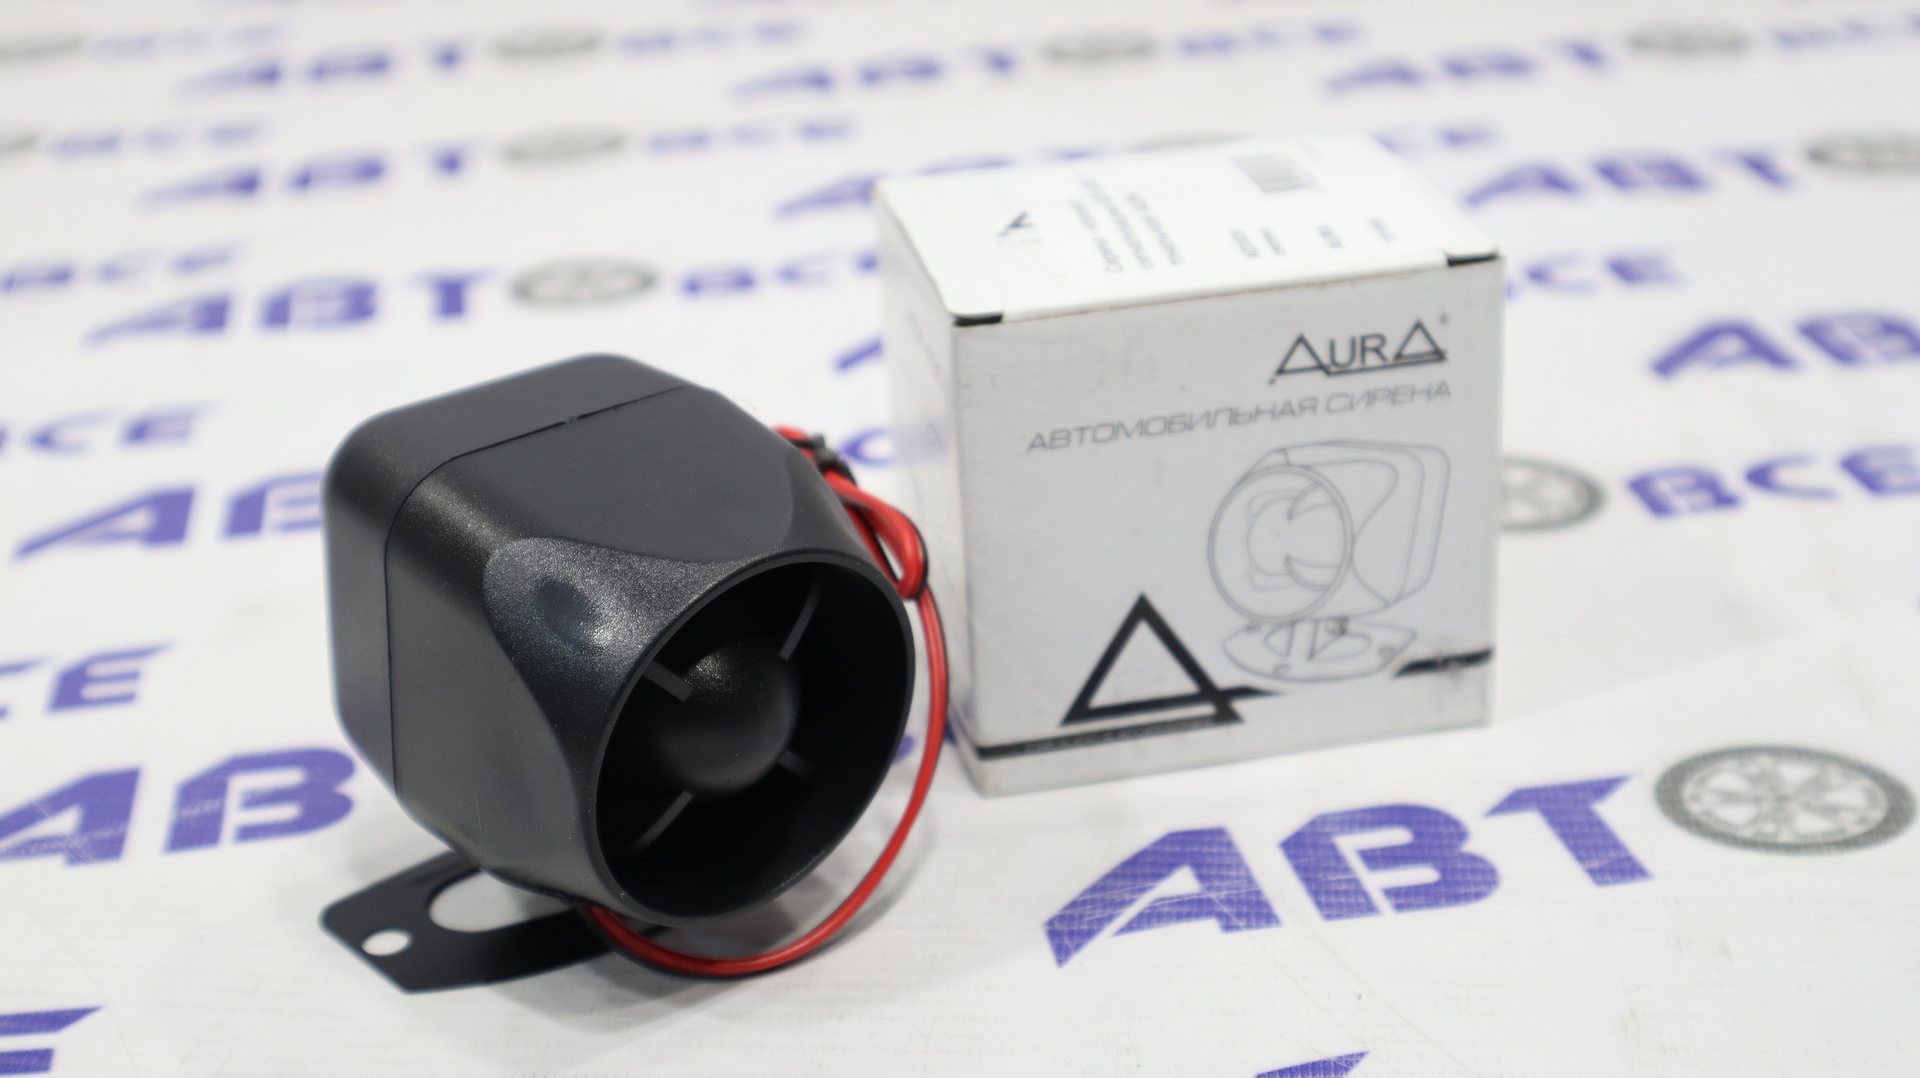 Сирена - колокол сигнализации ADX-430 (1 тональная) AURA